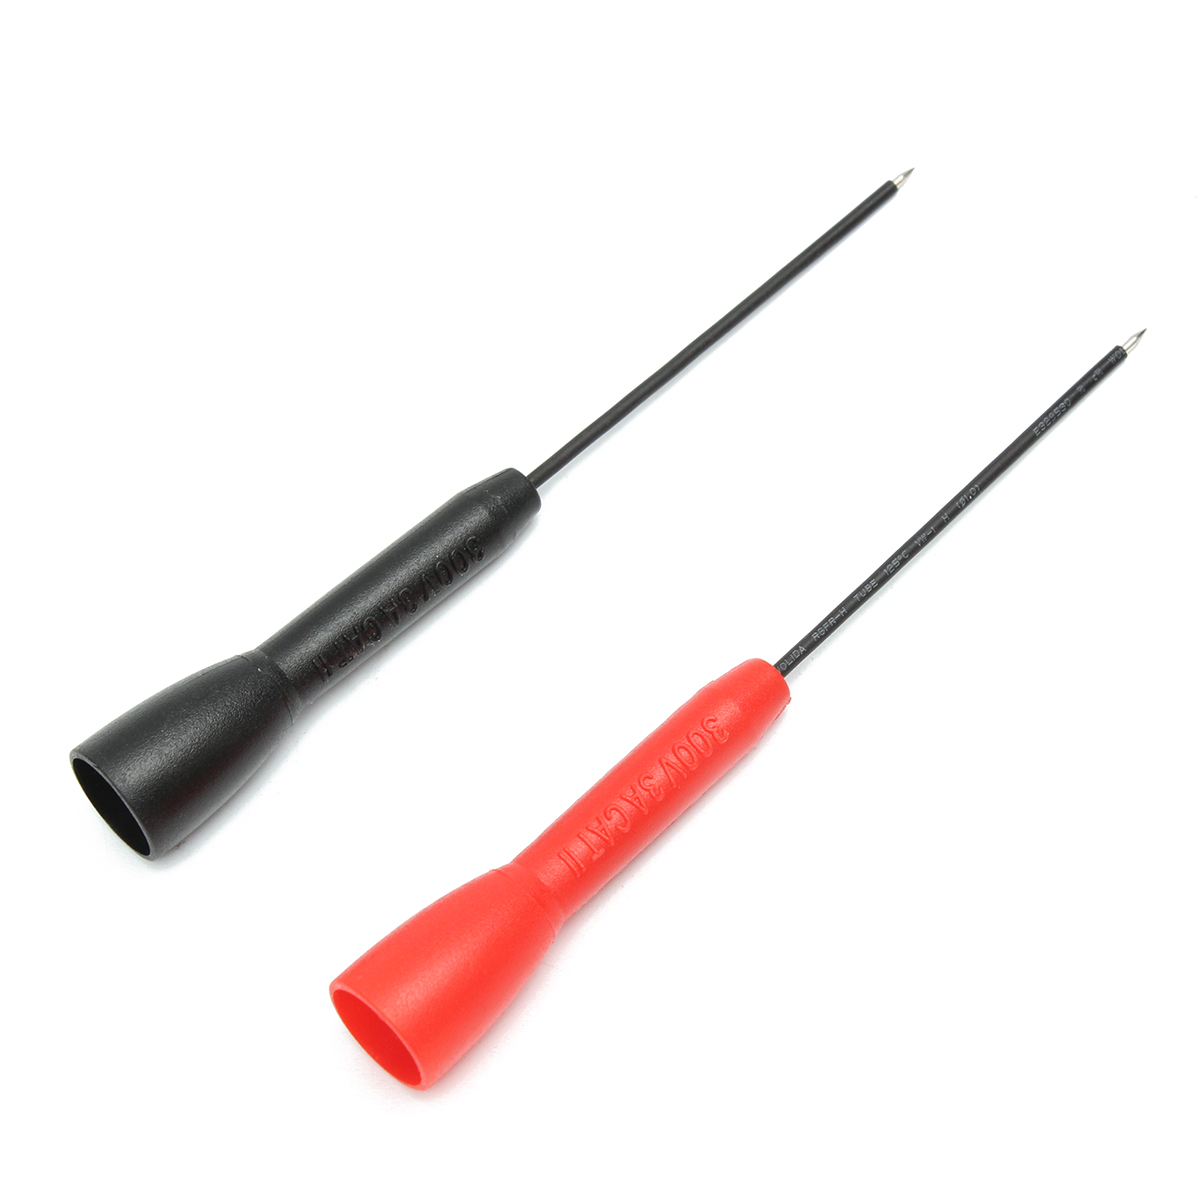 

Fluke TP88 2Pcs Piercing Needle Multimeter Test Probe